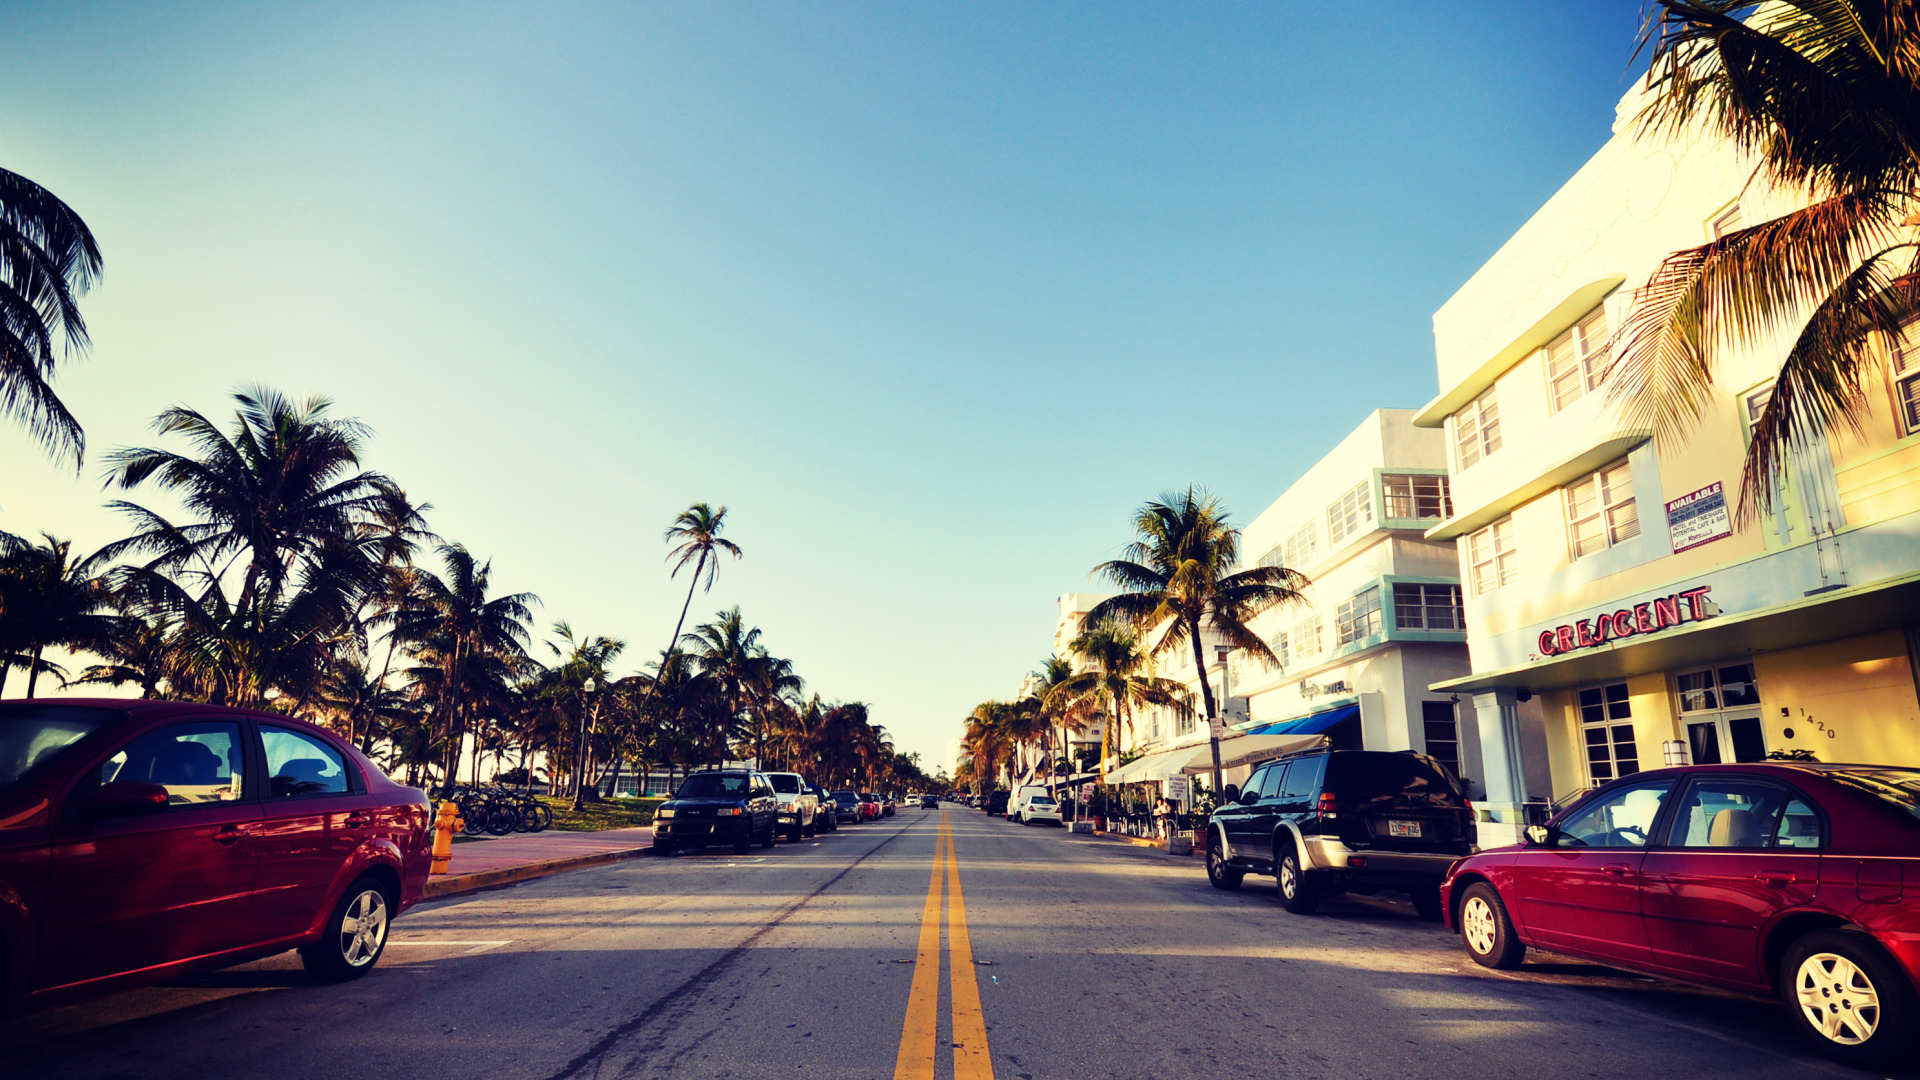 Обои для рабочего стола. дорога, авто, небо, пальмы, улица, Майами, Флорида...